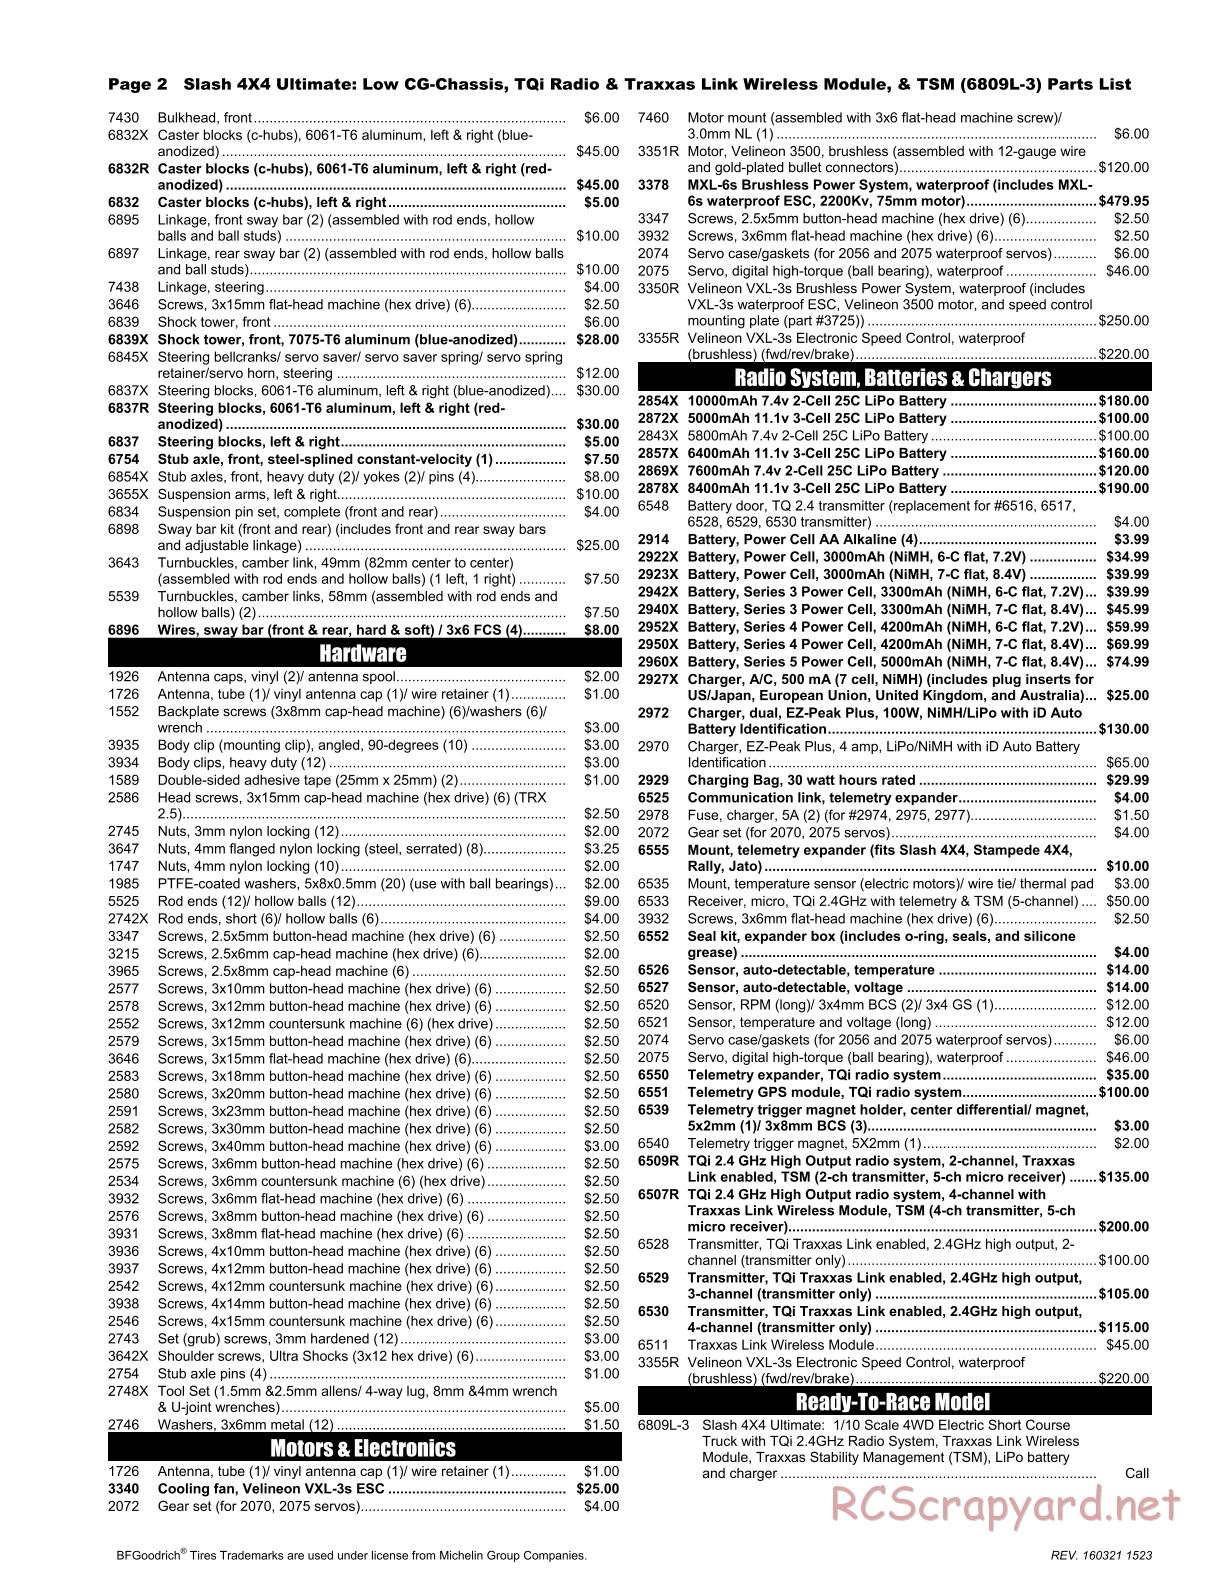 Traxxas - Slash 4x4 Ultimate TSM LiPo (2016) - Parts List - Page 2